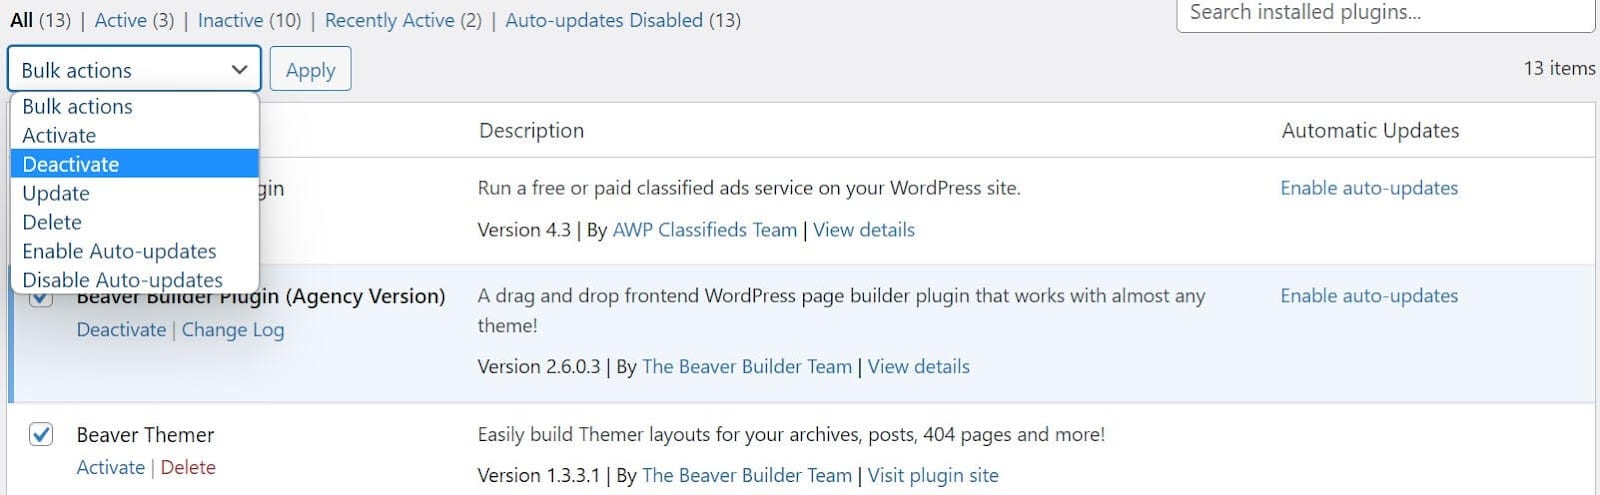 Disattivazione in blocco dei plugin di WordPress